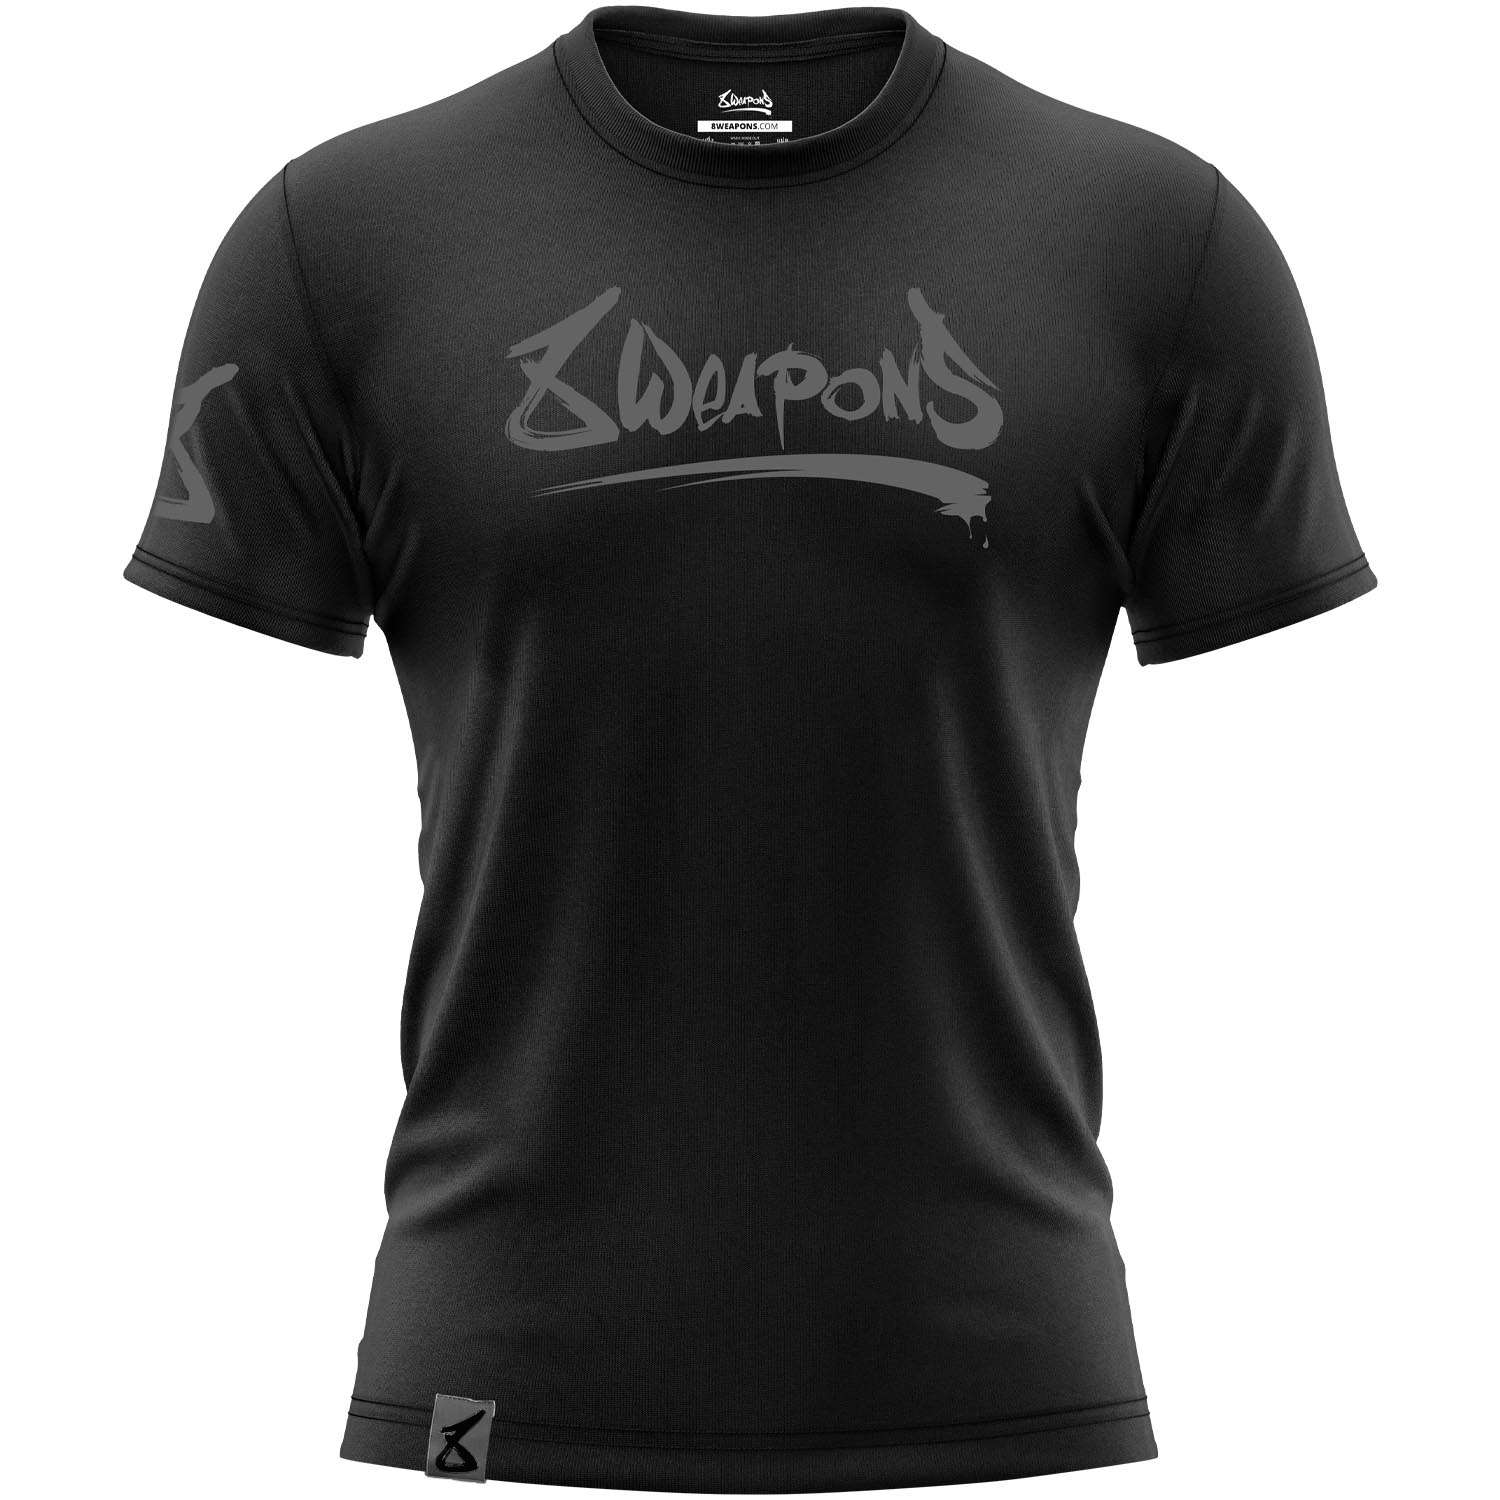 8 WEAPONS T-Shirt, Unlimited 2.0, schwarz-matt, S